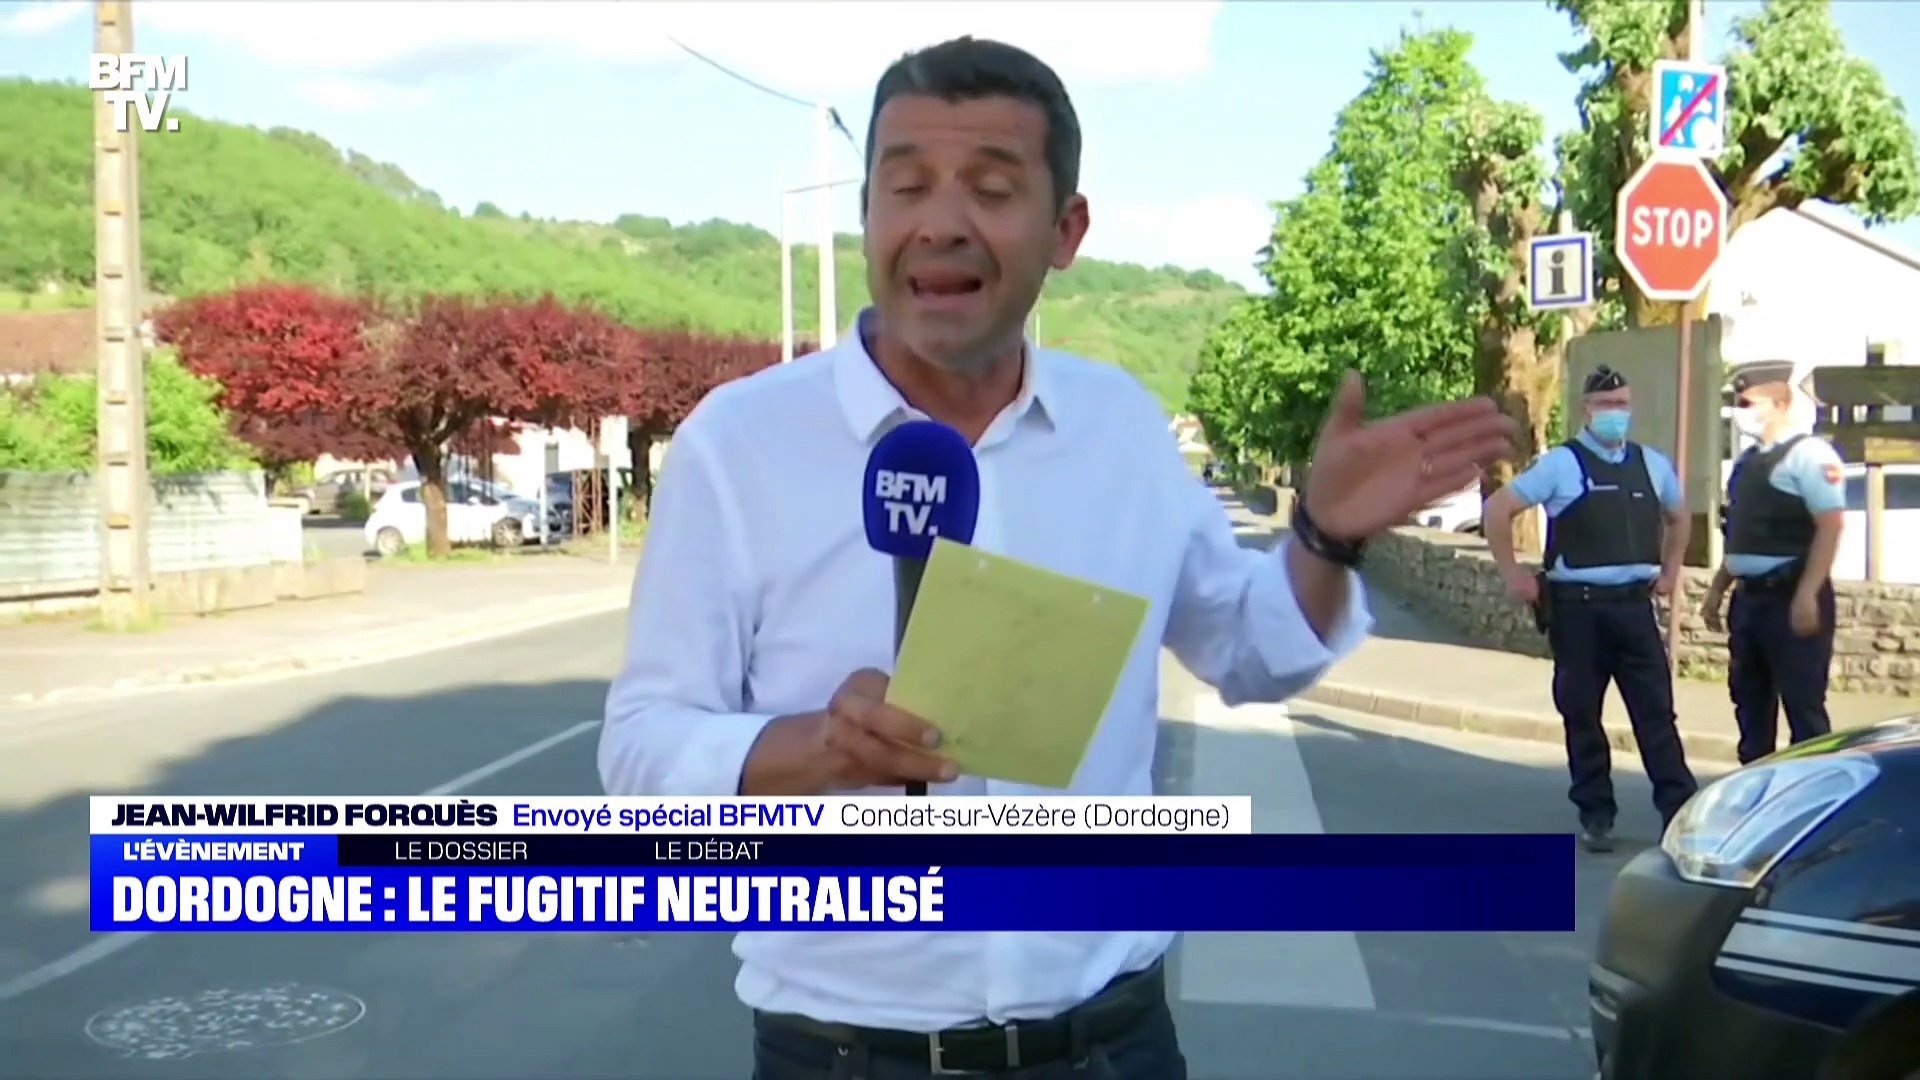 Dordogne: le fugitif neutralisé - 31/05 - Vidéo Dailymotion